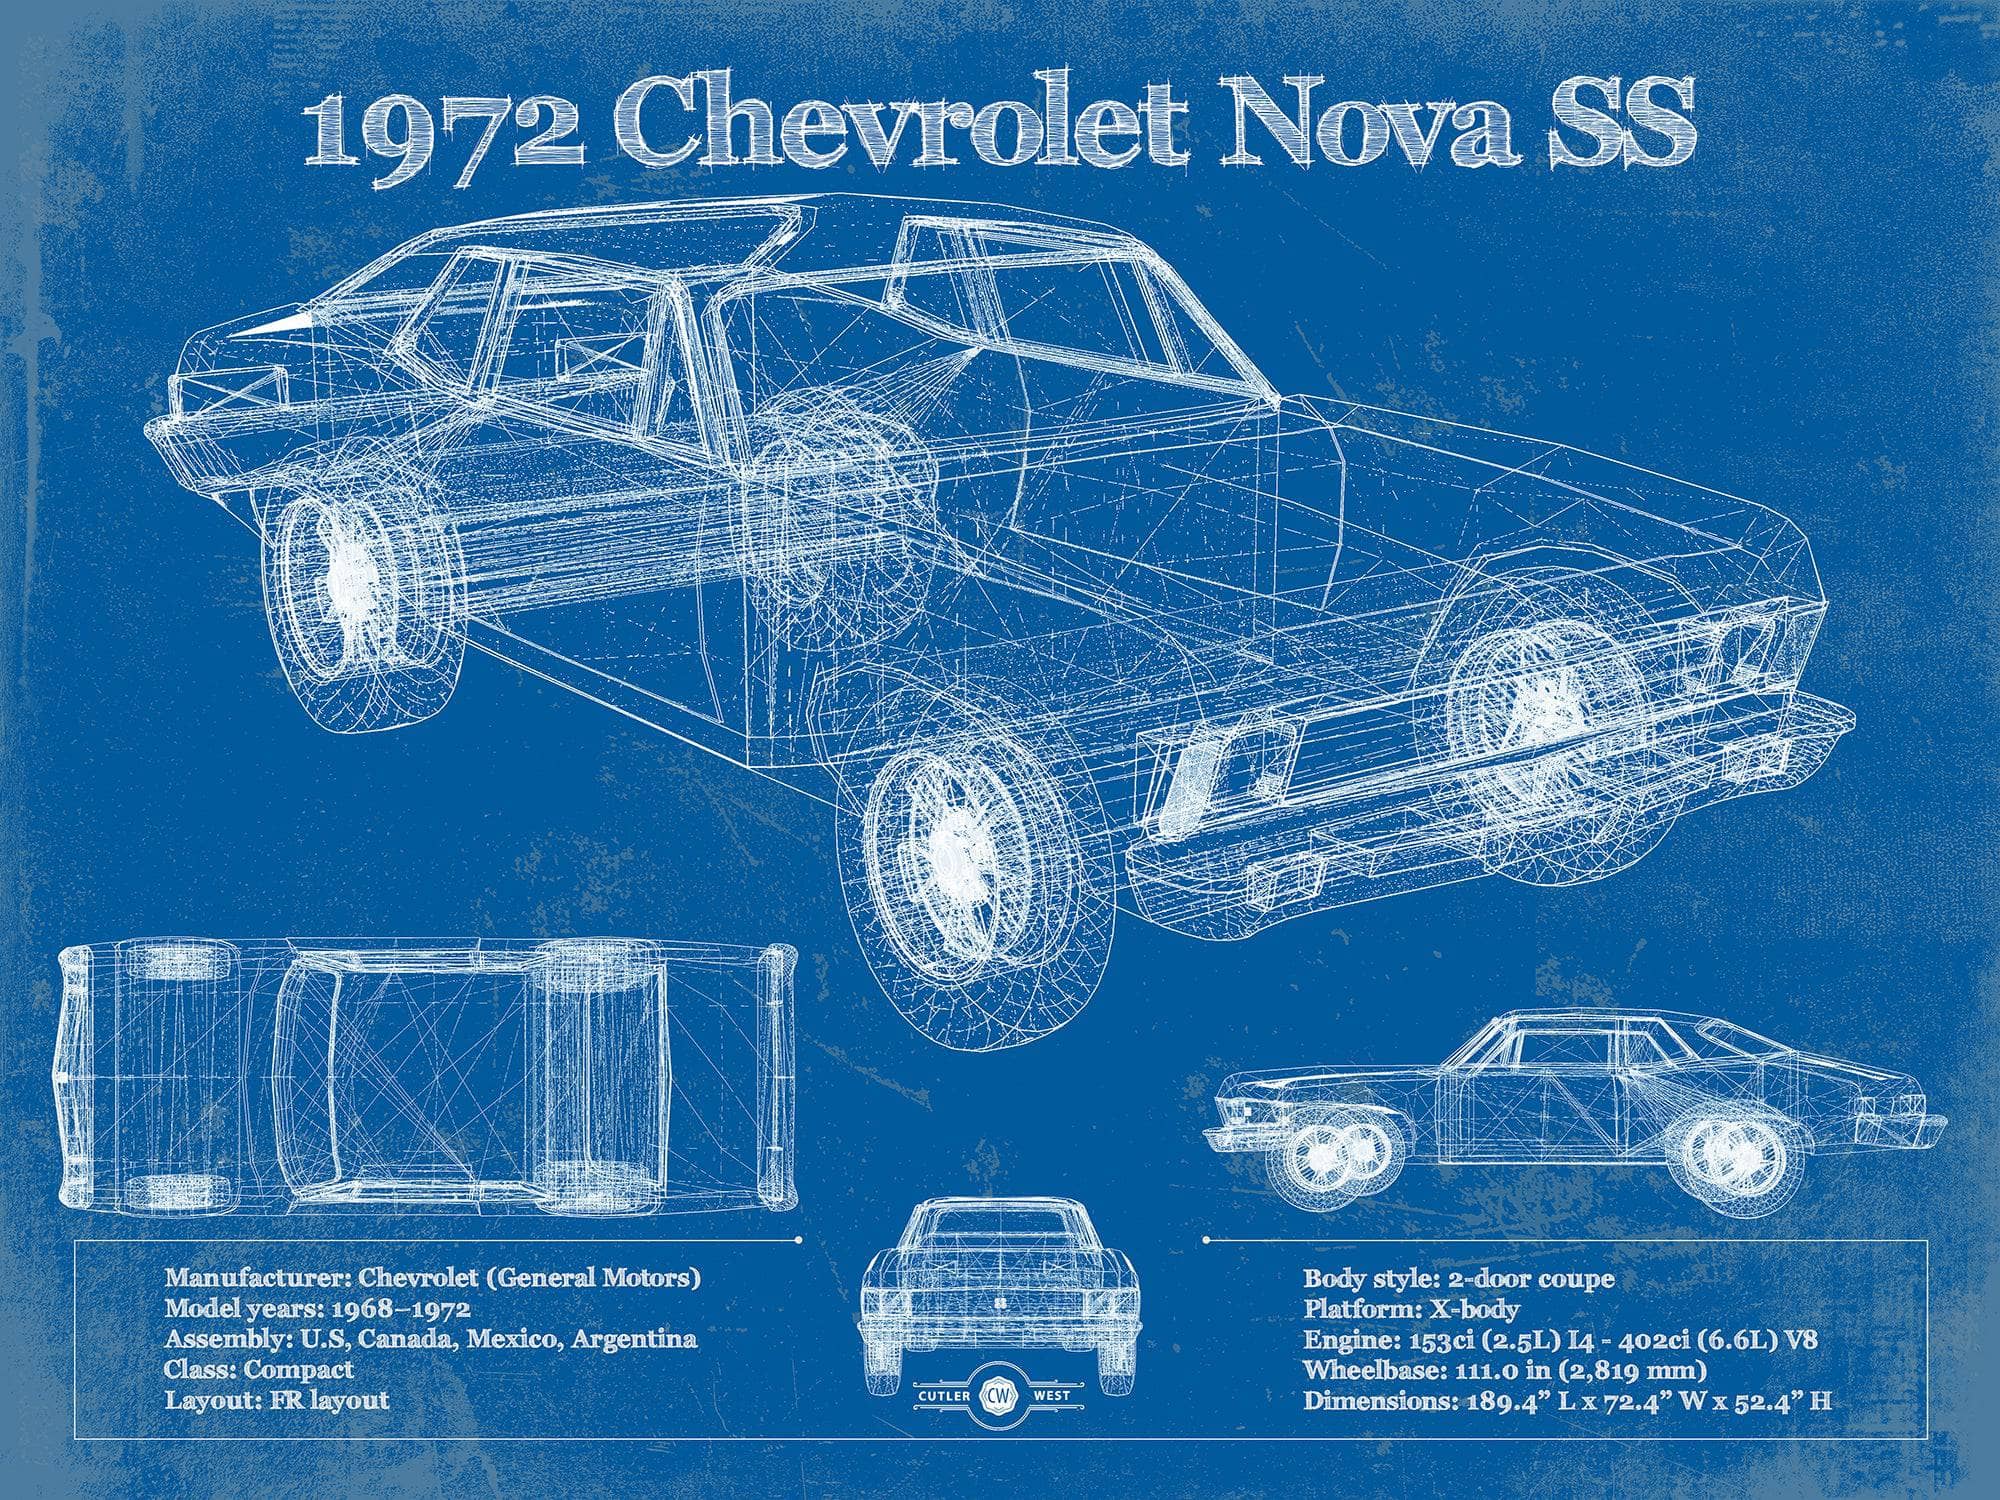 Cutler West Chevrolet Collection 1972 Chevrolet Nova SS Blueprint Vintage Auto Patent Print